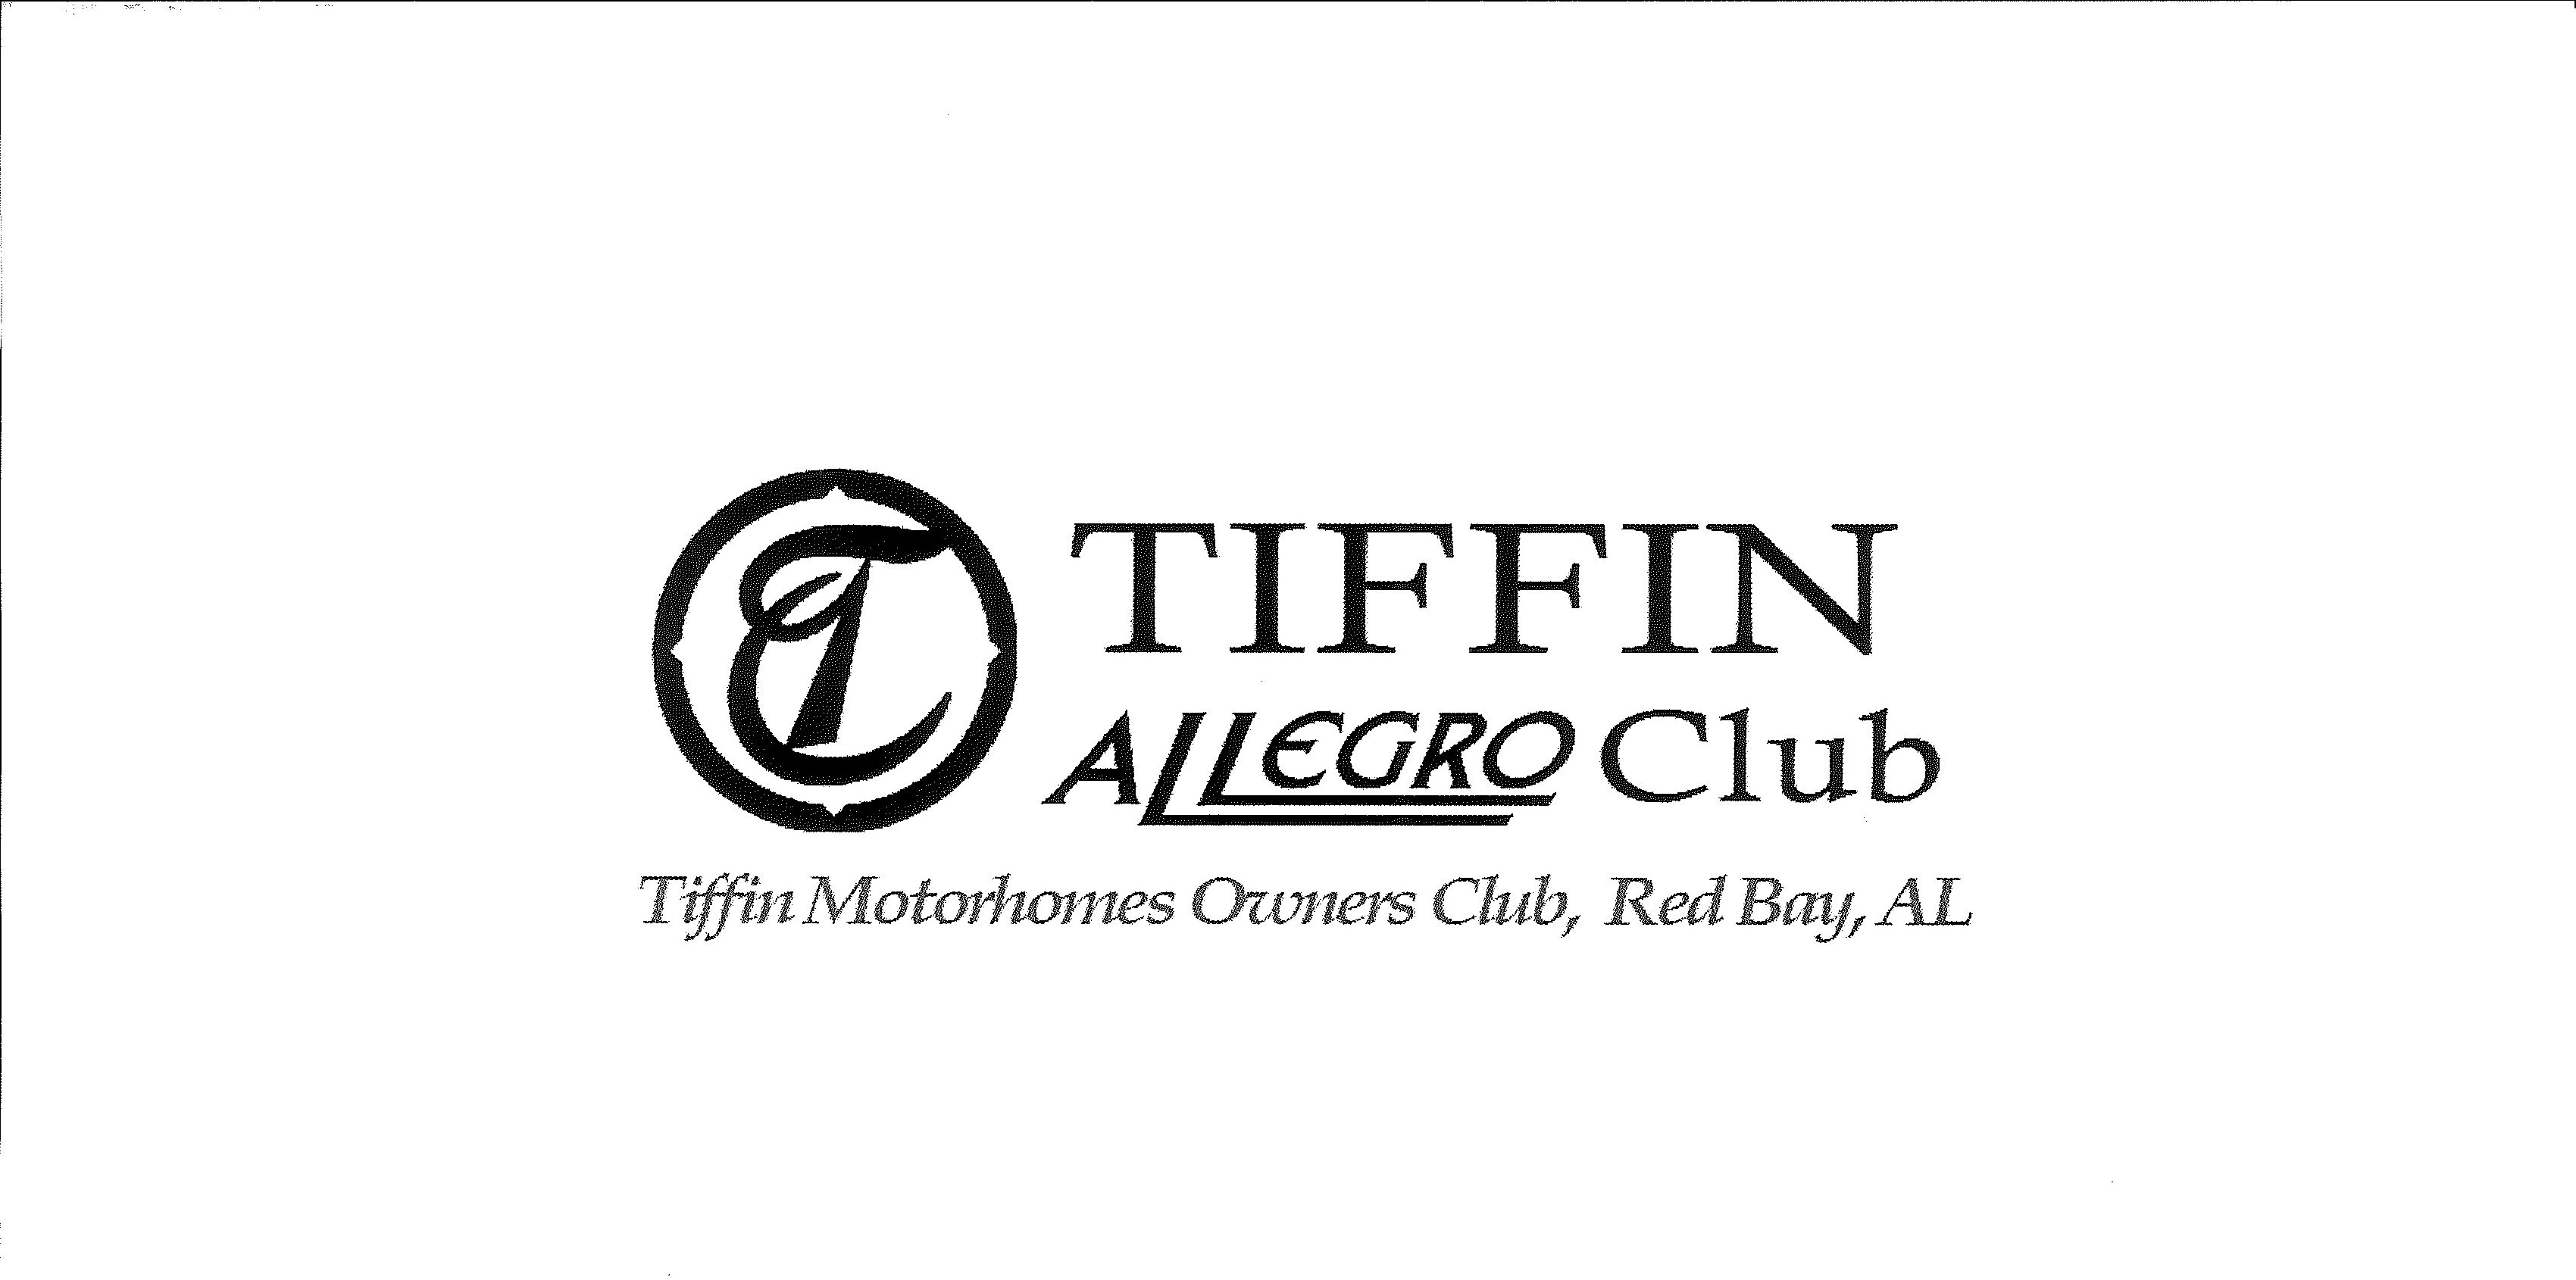  T TIFFIN ALLEGRO CLUB TIFFIN MOTORHOMES OWNERS CLUB, RED BAY, AL